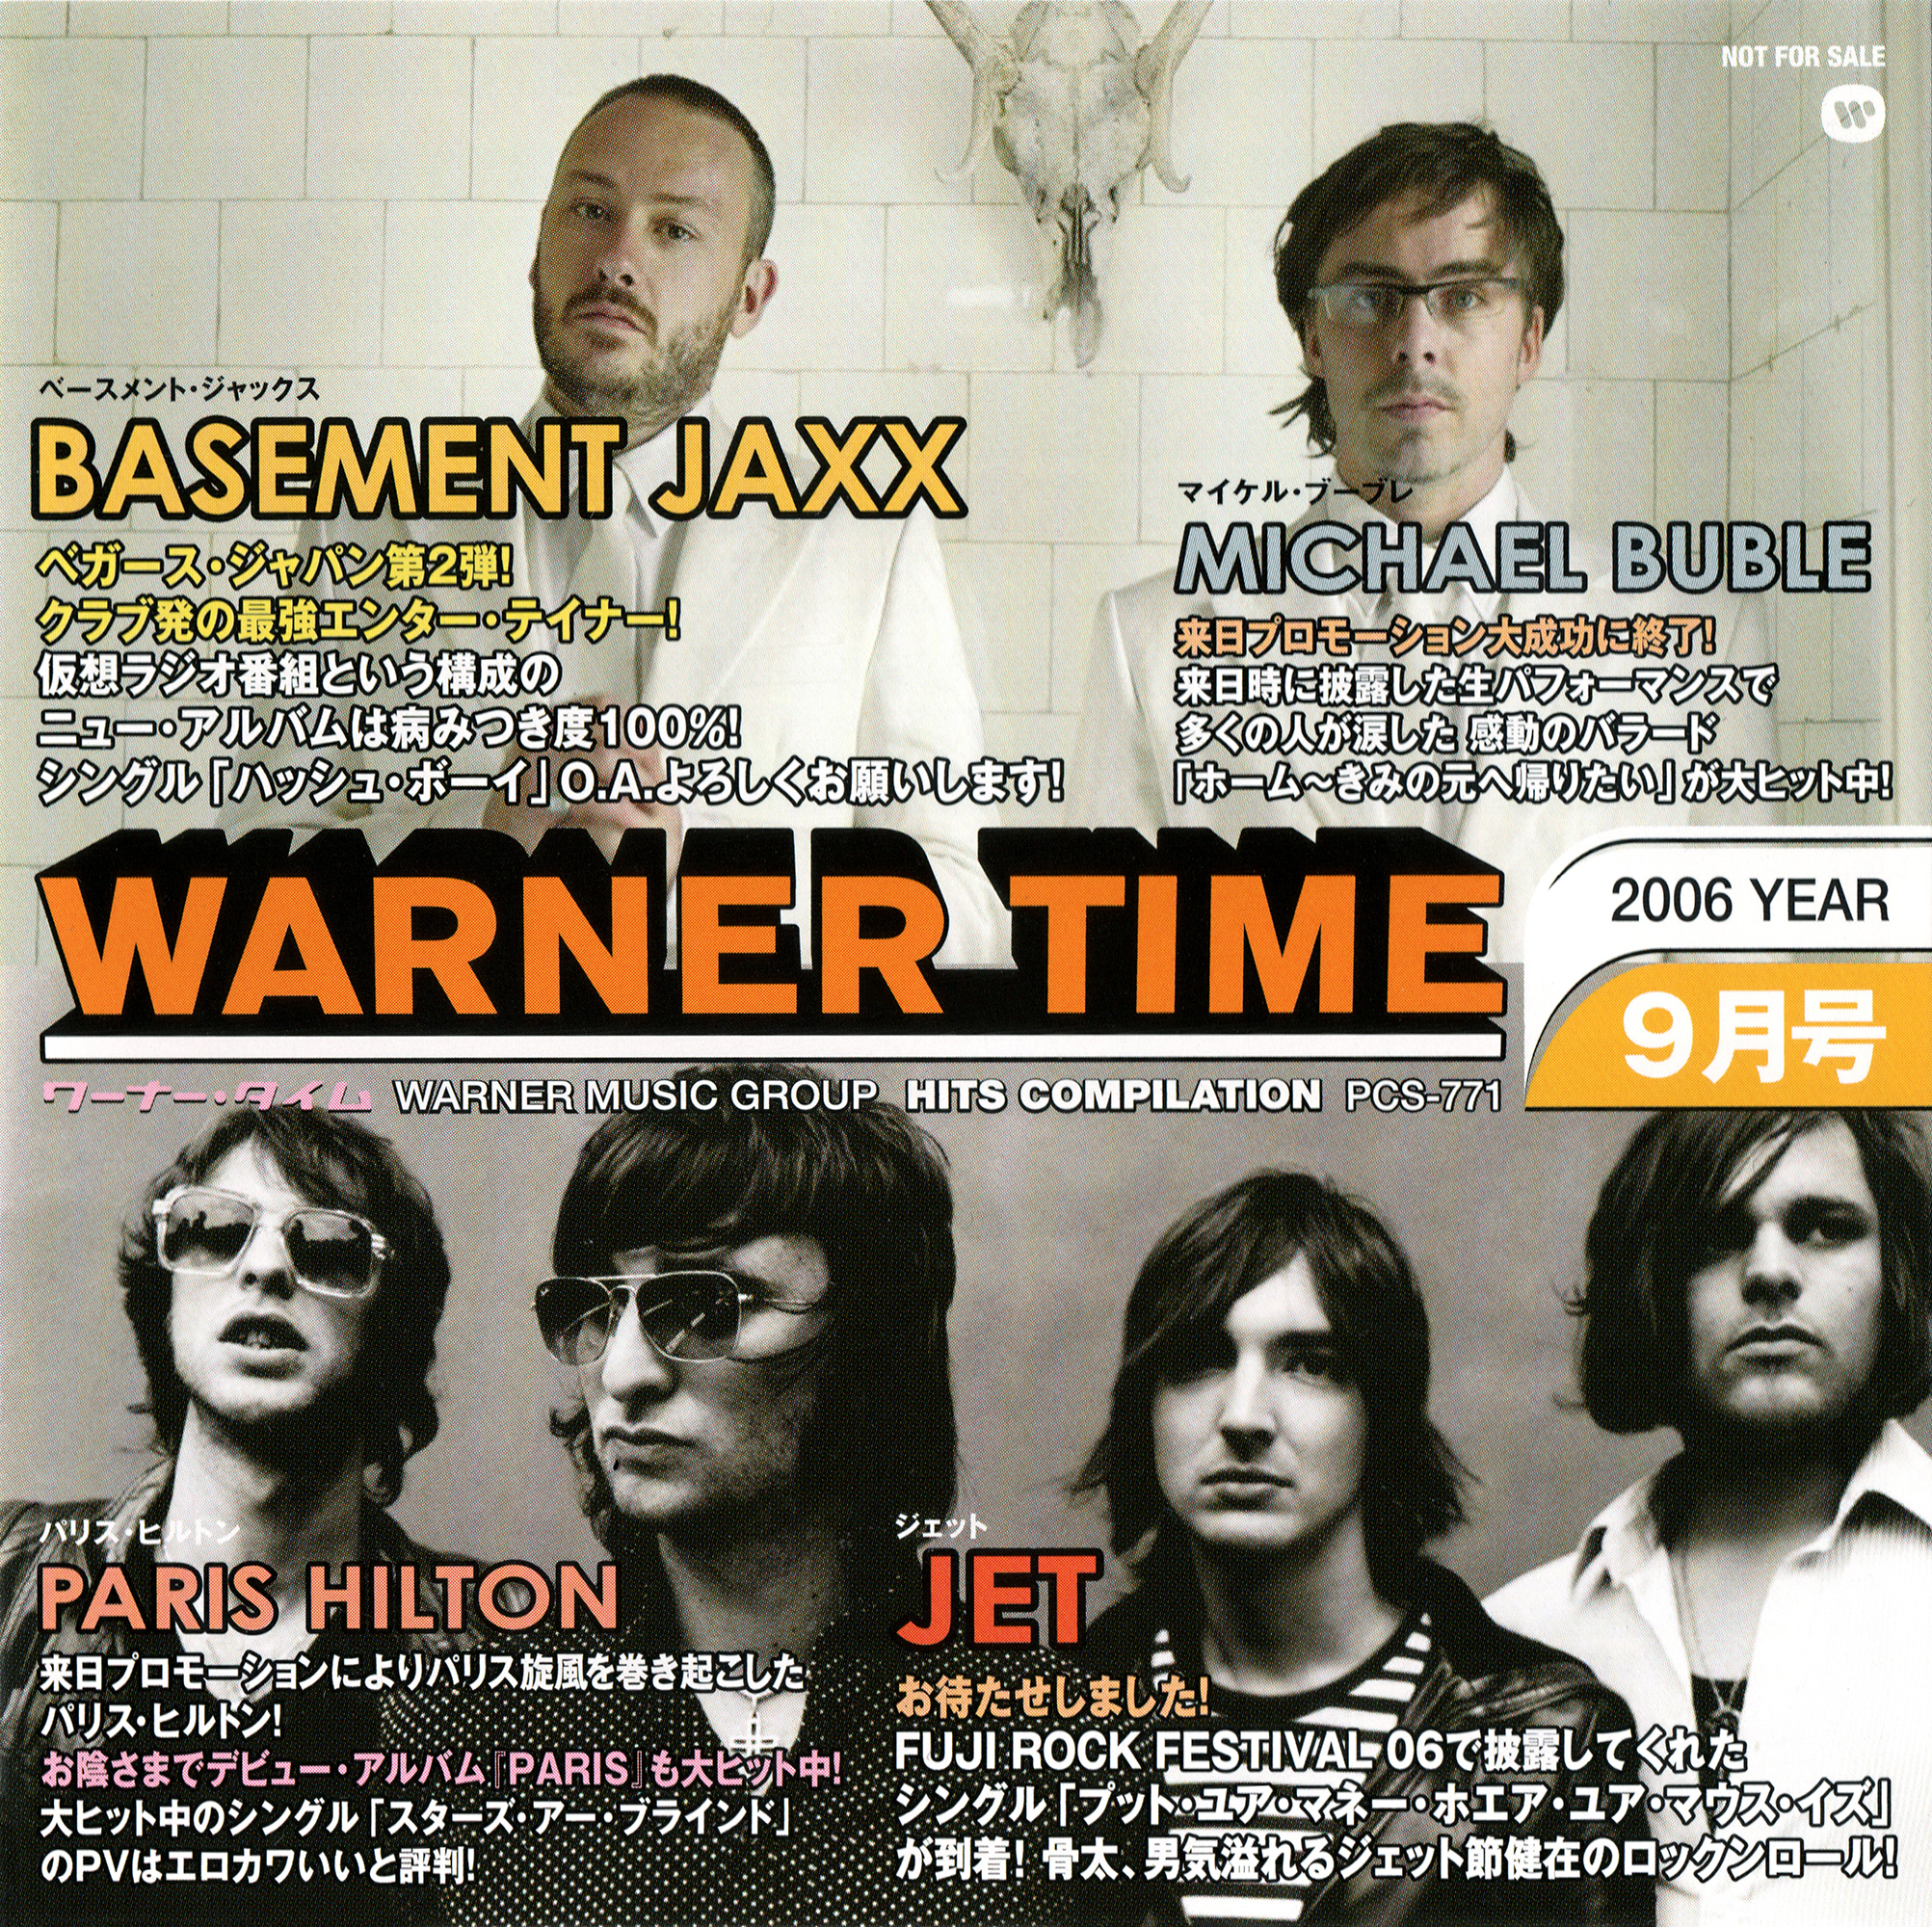 非売品プロモ盤CD『WARNER TIME ワーナー・タイム2006.9月号』高画質CDジャケット画像 (ジャケ写)